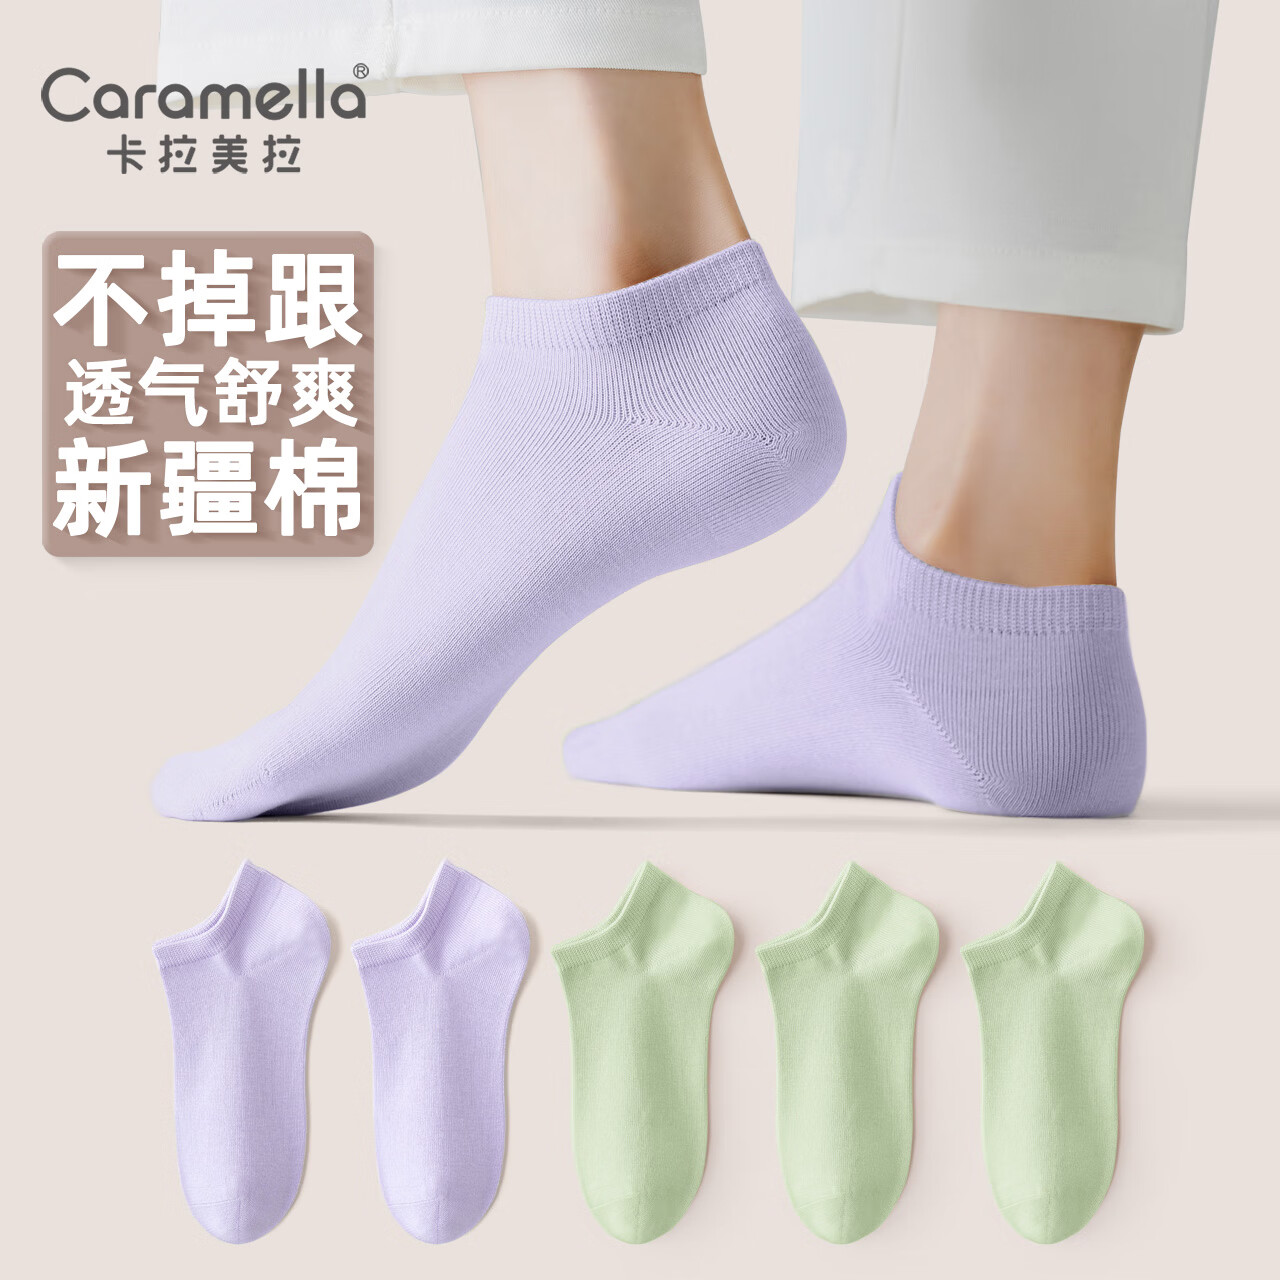 Caramella 卡拉美拉 女士棉短筒袜 5双装 ￥15.9